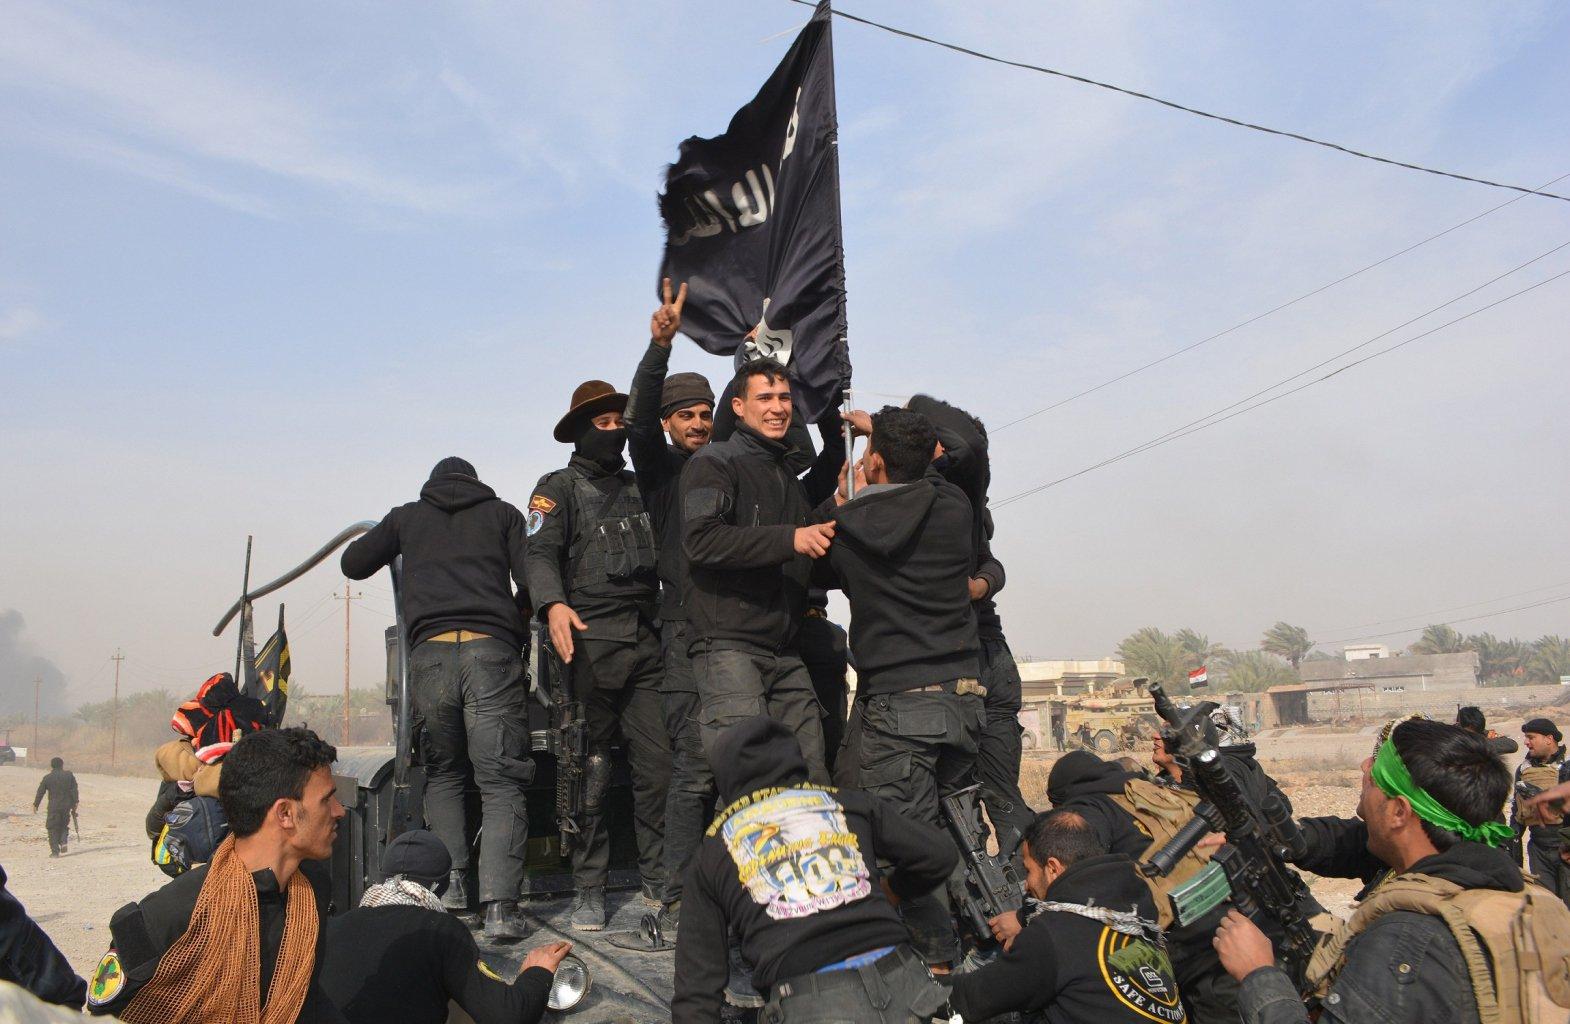 Η τρομοκρατία στη μετα-ISIS εποχή: η περίπτωση της Γαλλίας